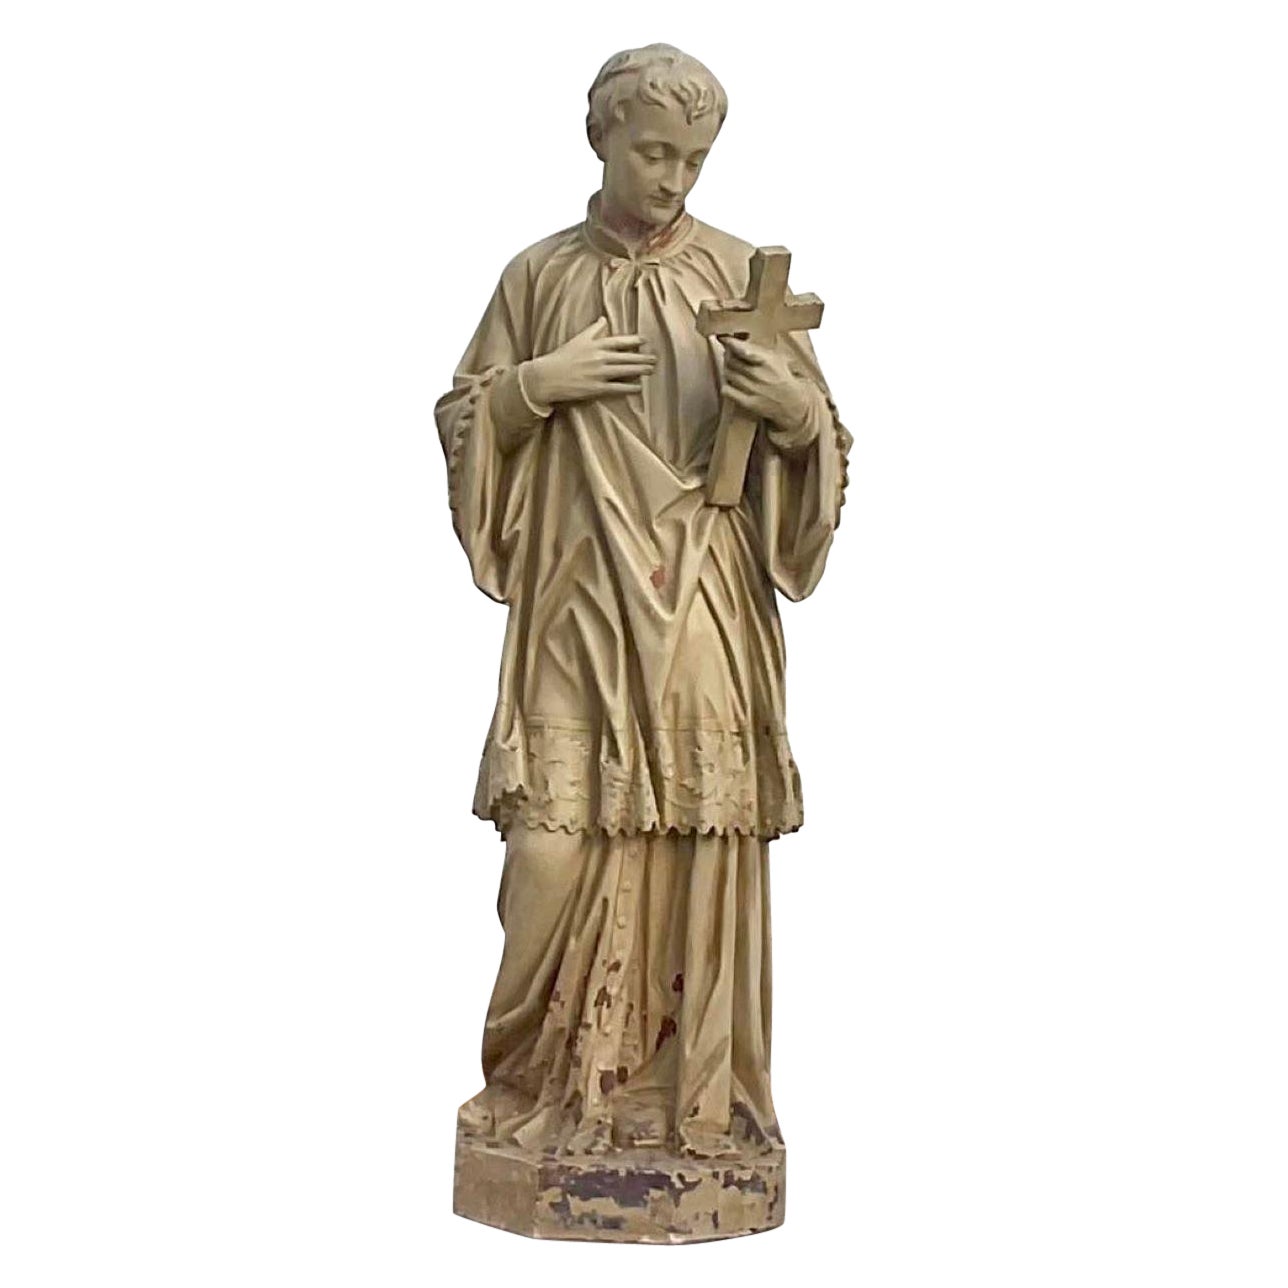 Gegossene Gipsstatue des Heiligen Aloysius Gonzaga aus dem frühen 20. Jahrhundert